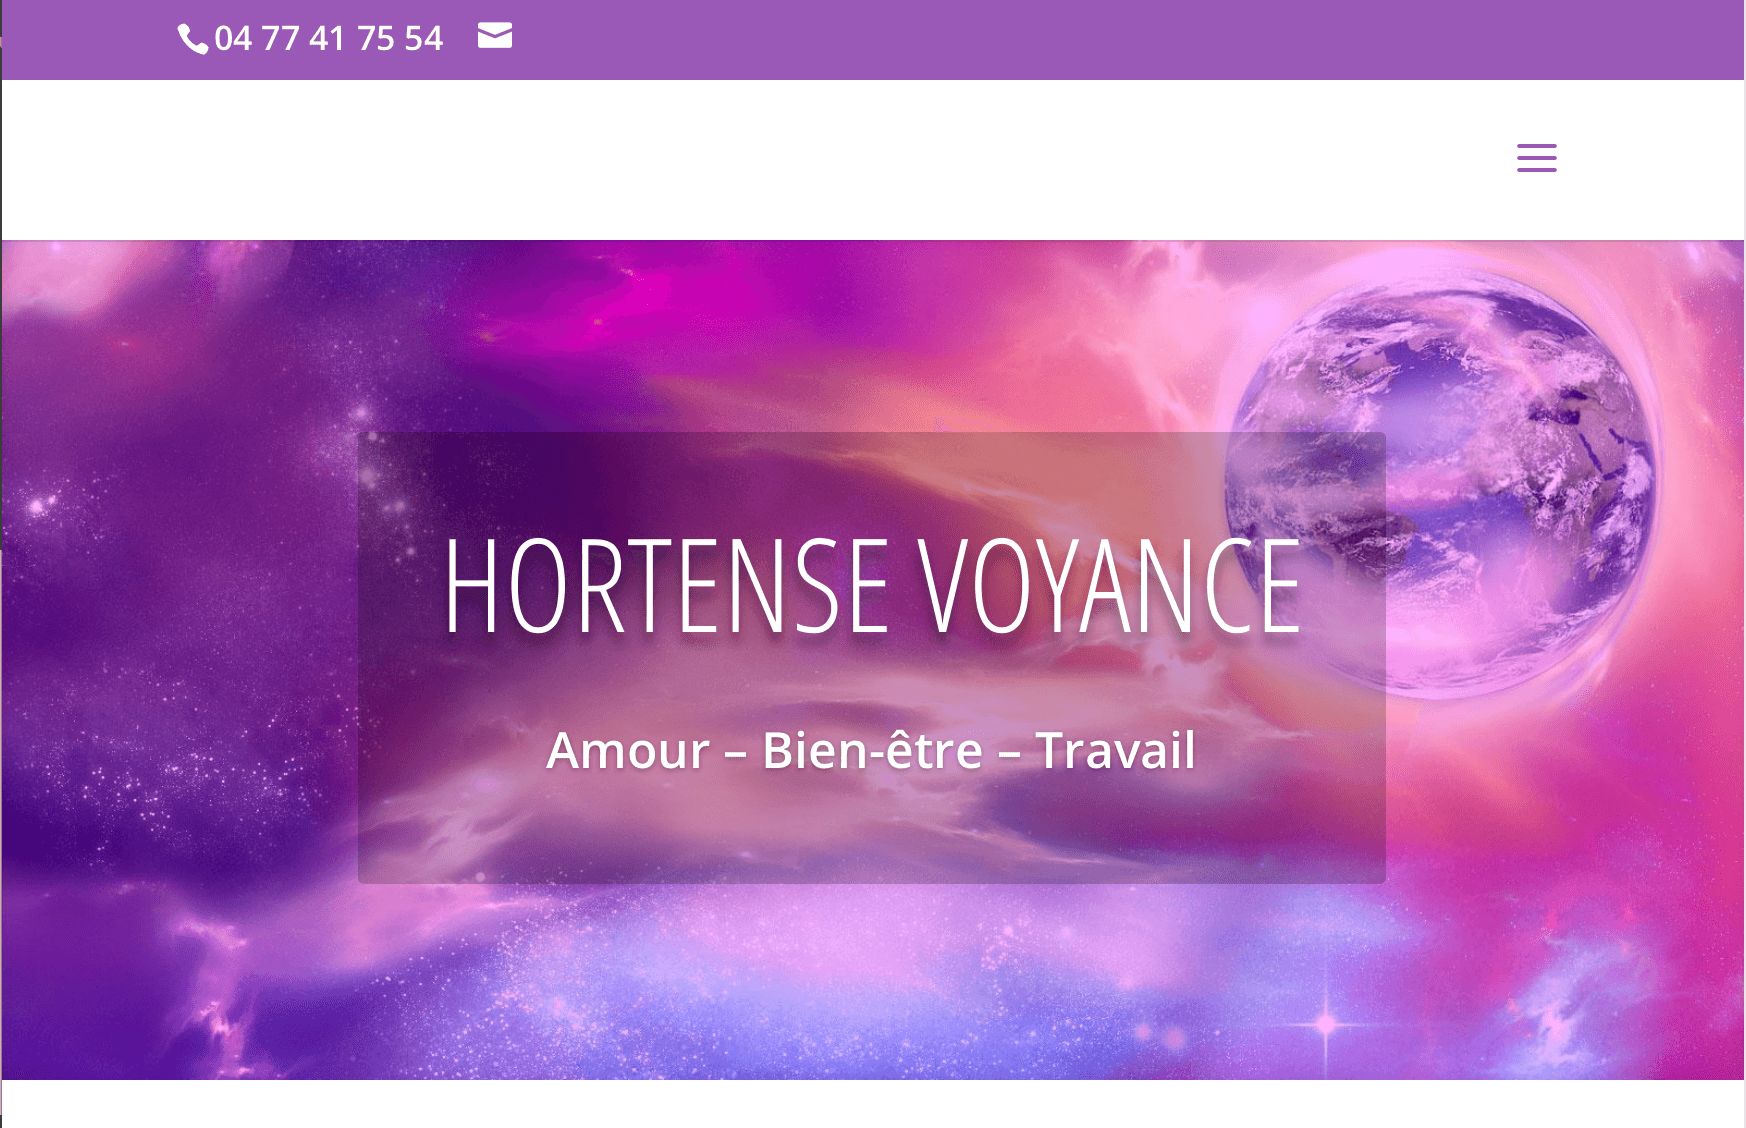 Hortense Voyance : Création de site web